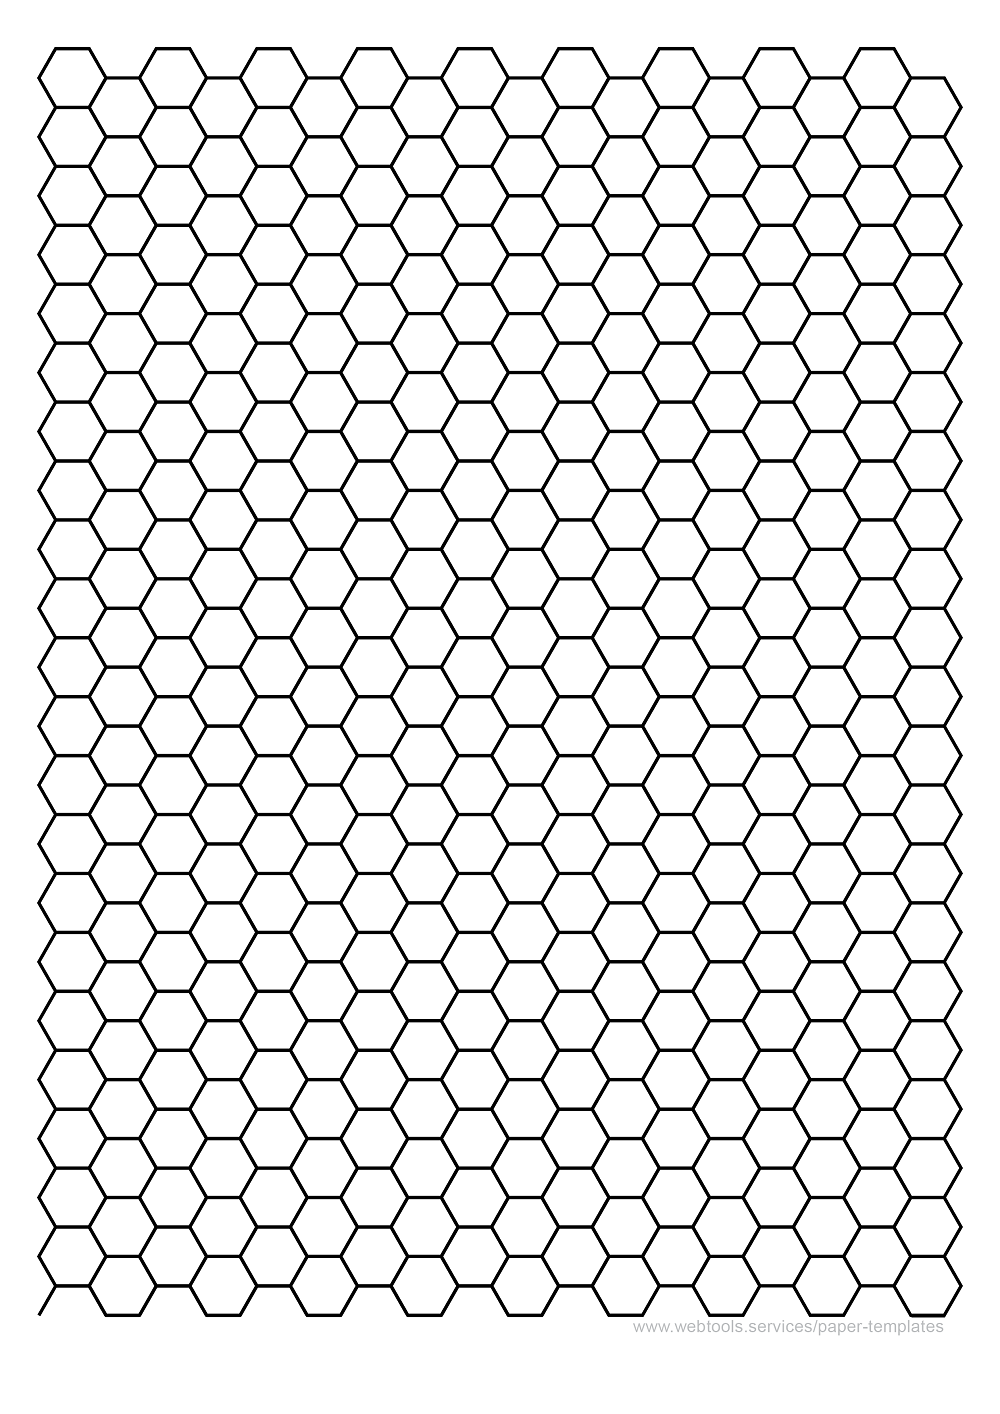 1/2 Inch Hexagonal Grid Paper